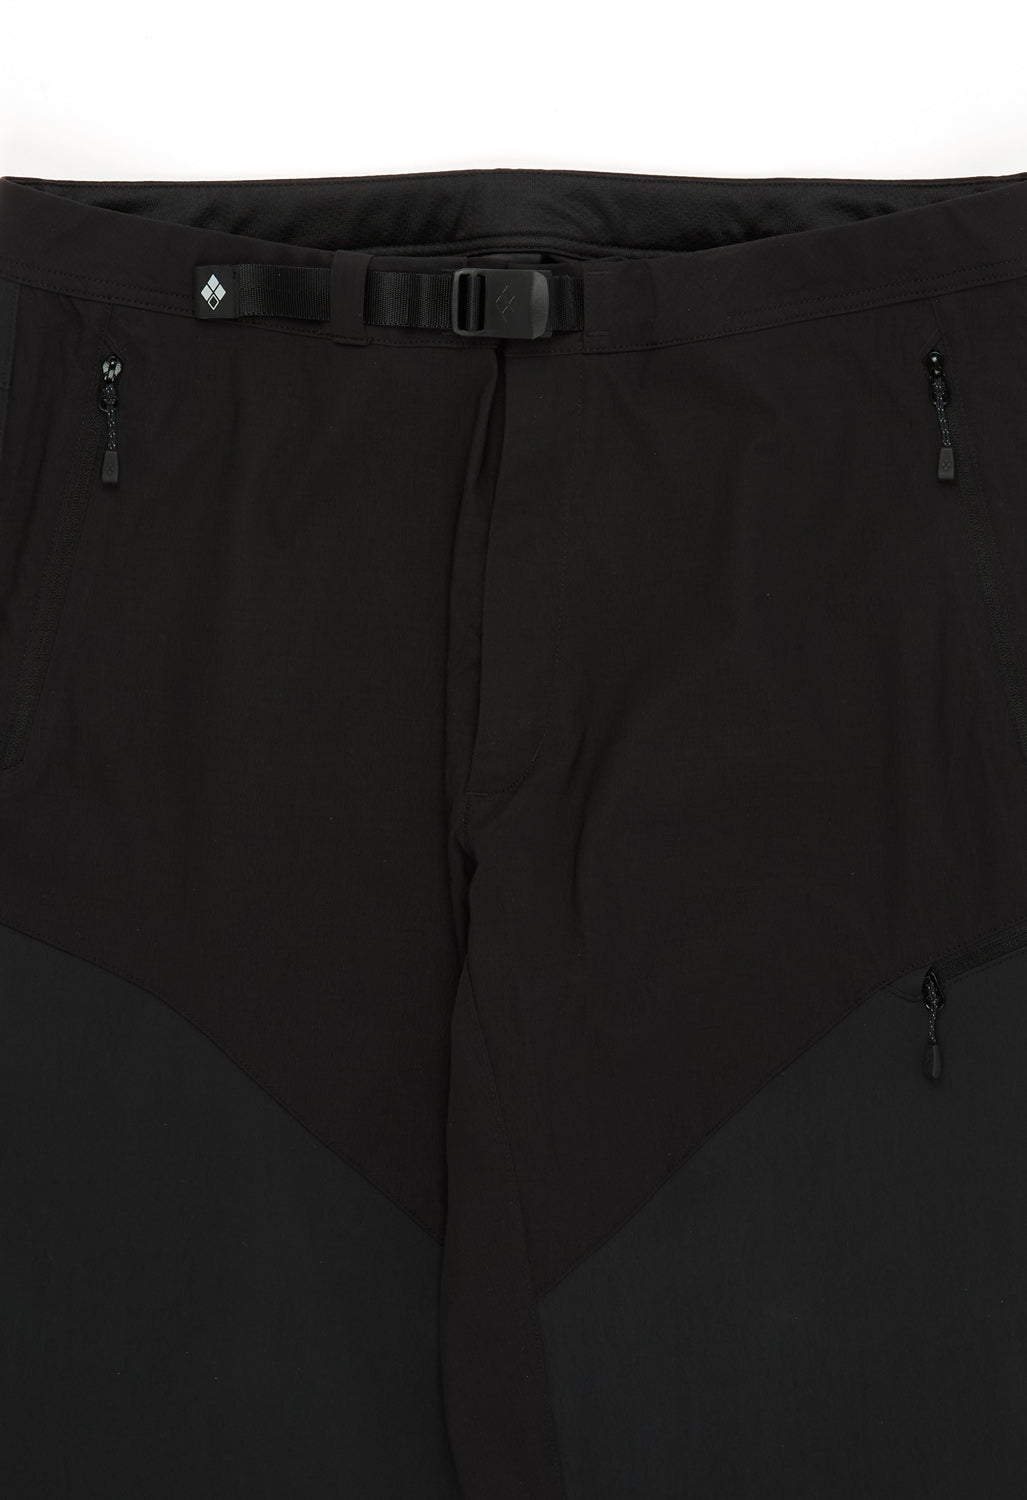 Montbell Men's Light Guide Pants - Black